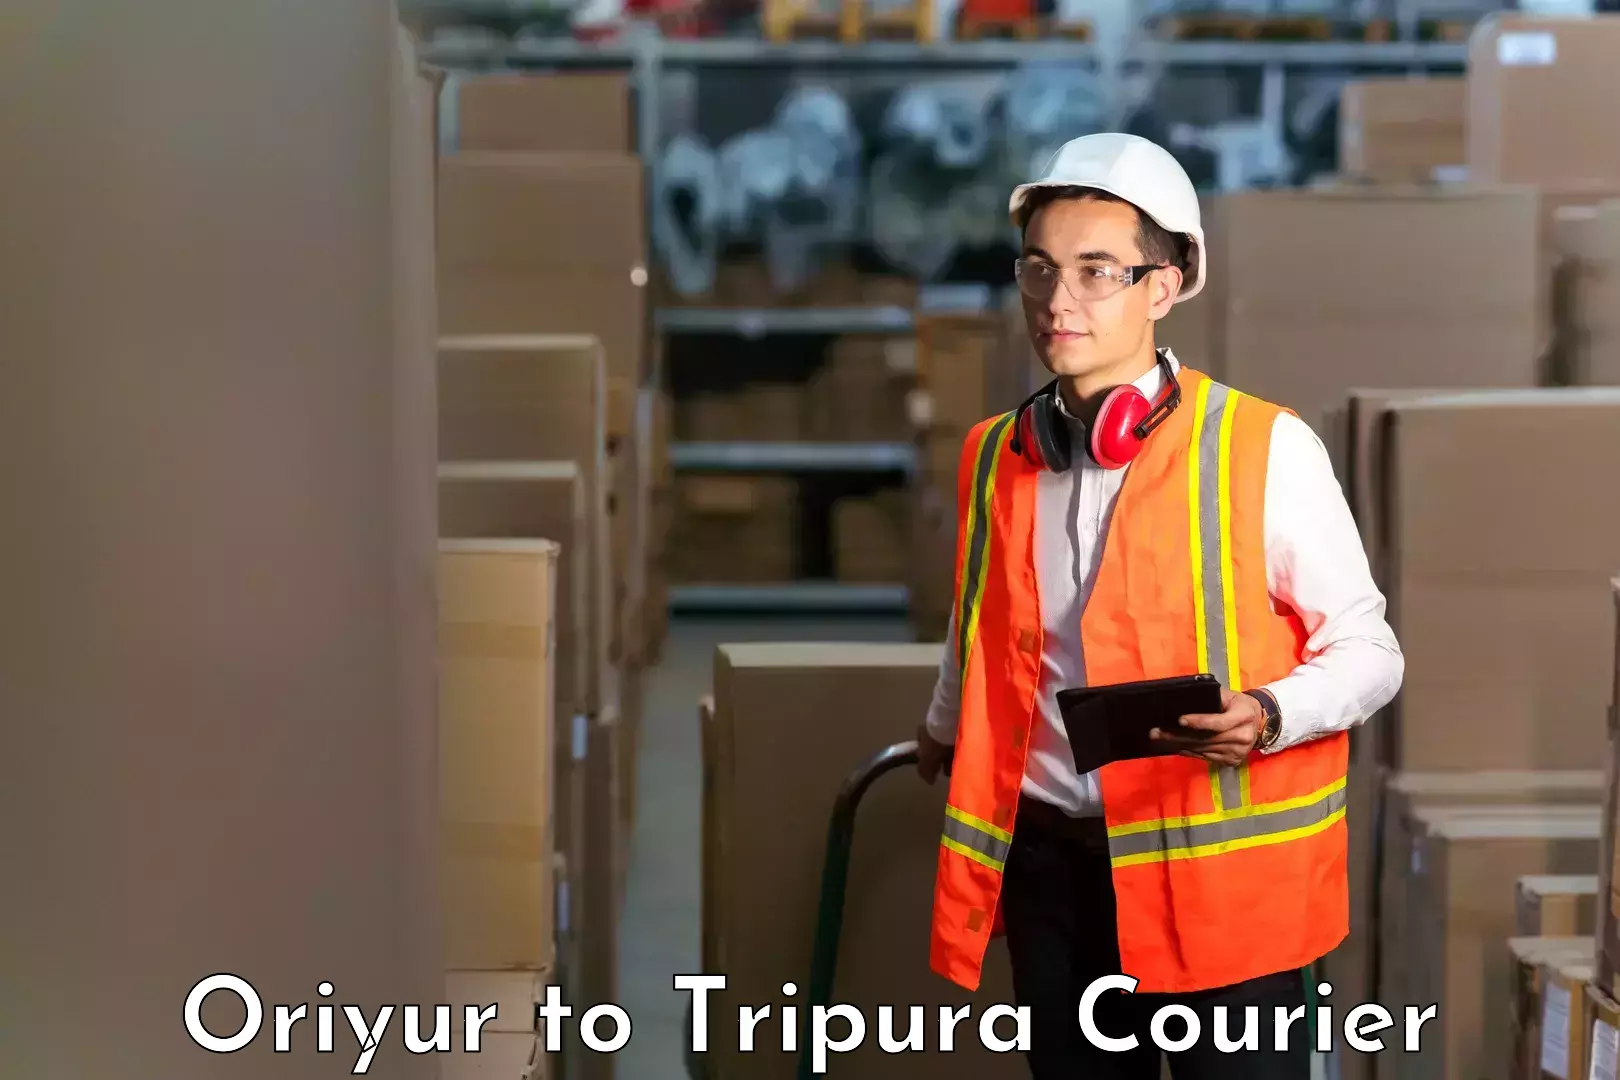 Courier service comparison Oriyur to Bishalgarh